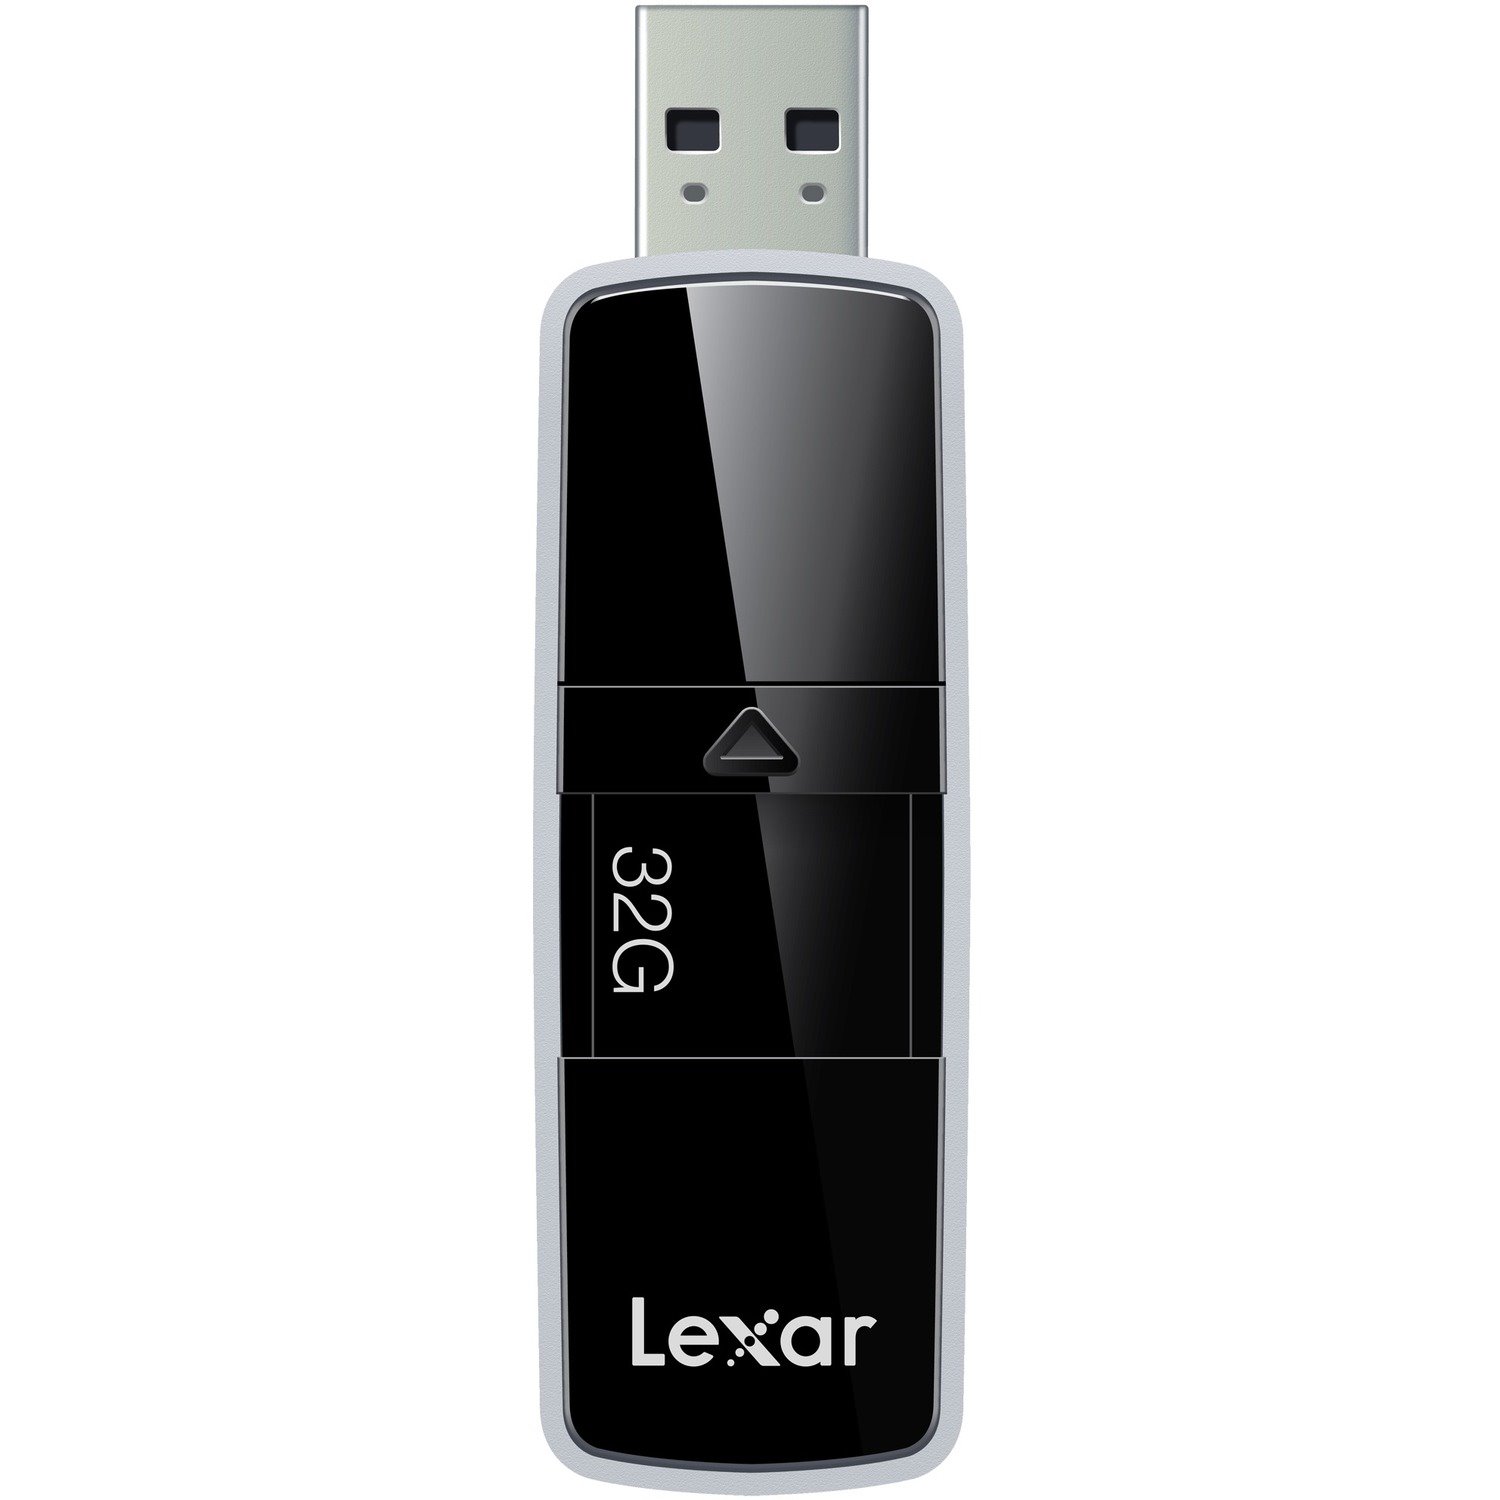 Lexar JumpDrive P20 32 GB USB 3.0 Flash Drive - Black